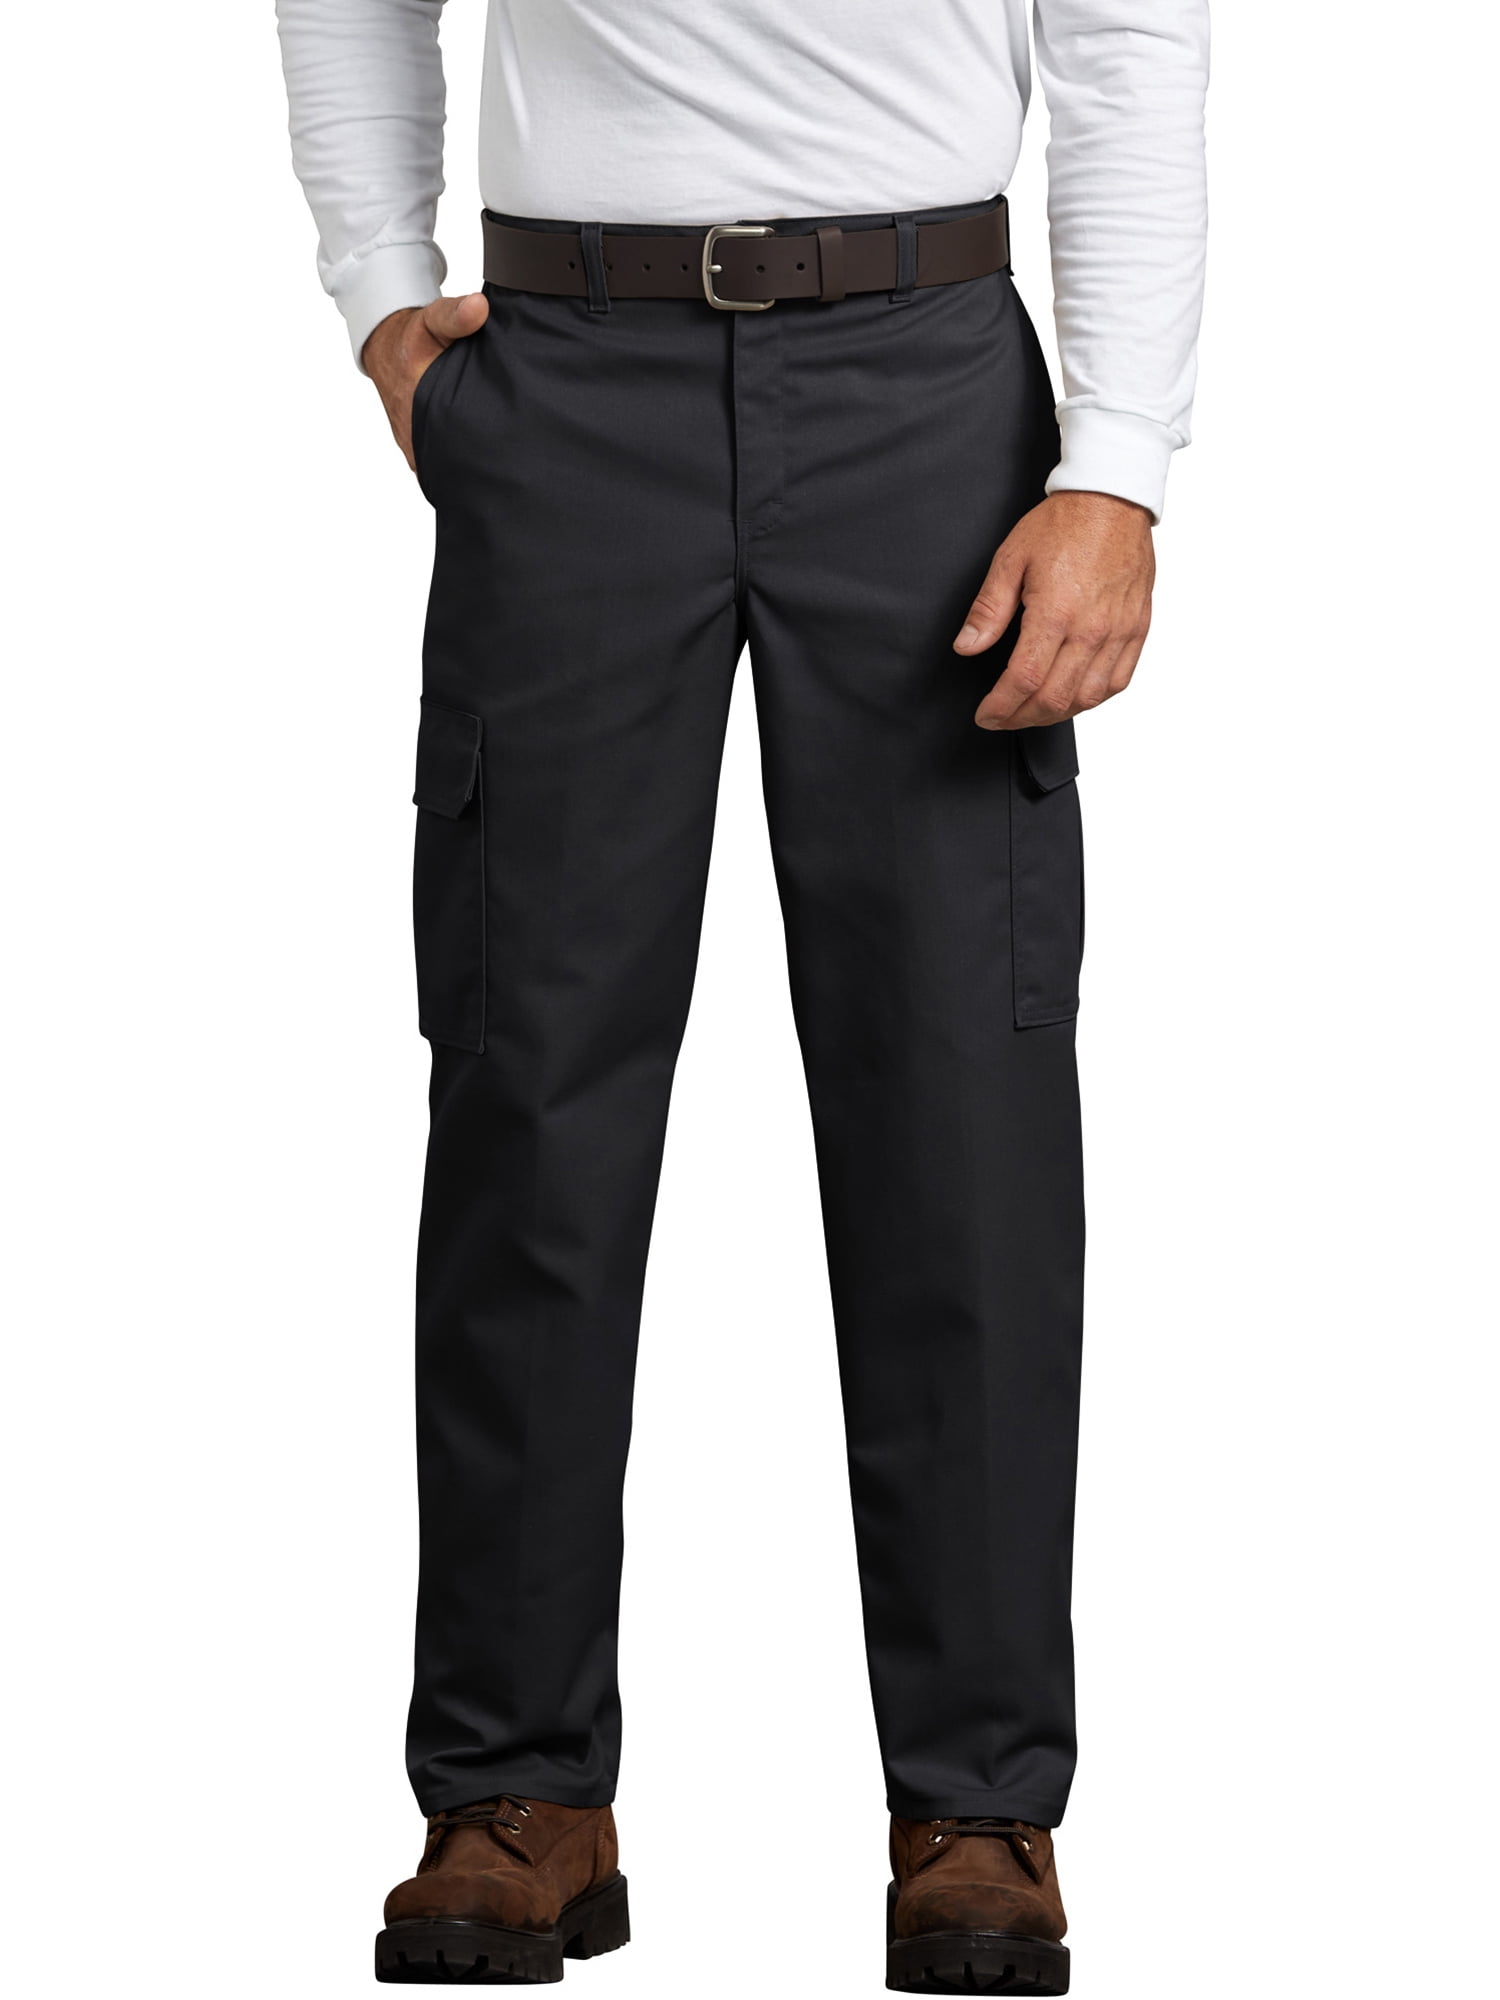 Men/’s Modern Fit Flat Front Tuxedo Pants Comfort Fit Expandable Waist